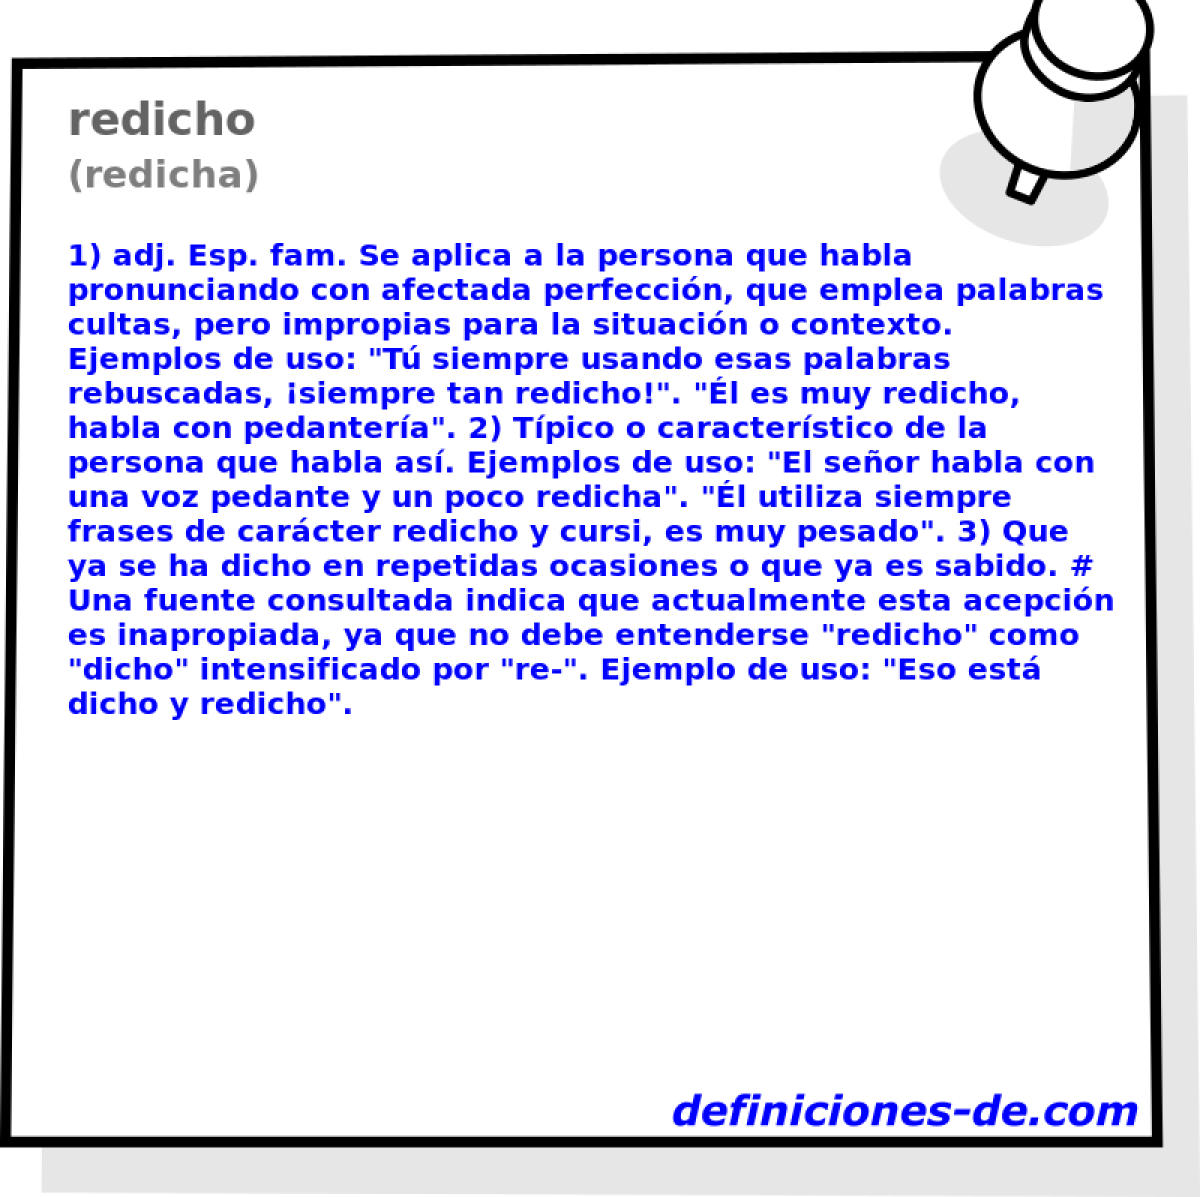 redicho (redicha)